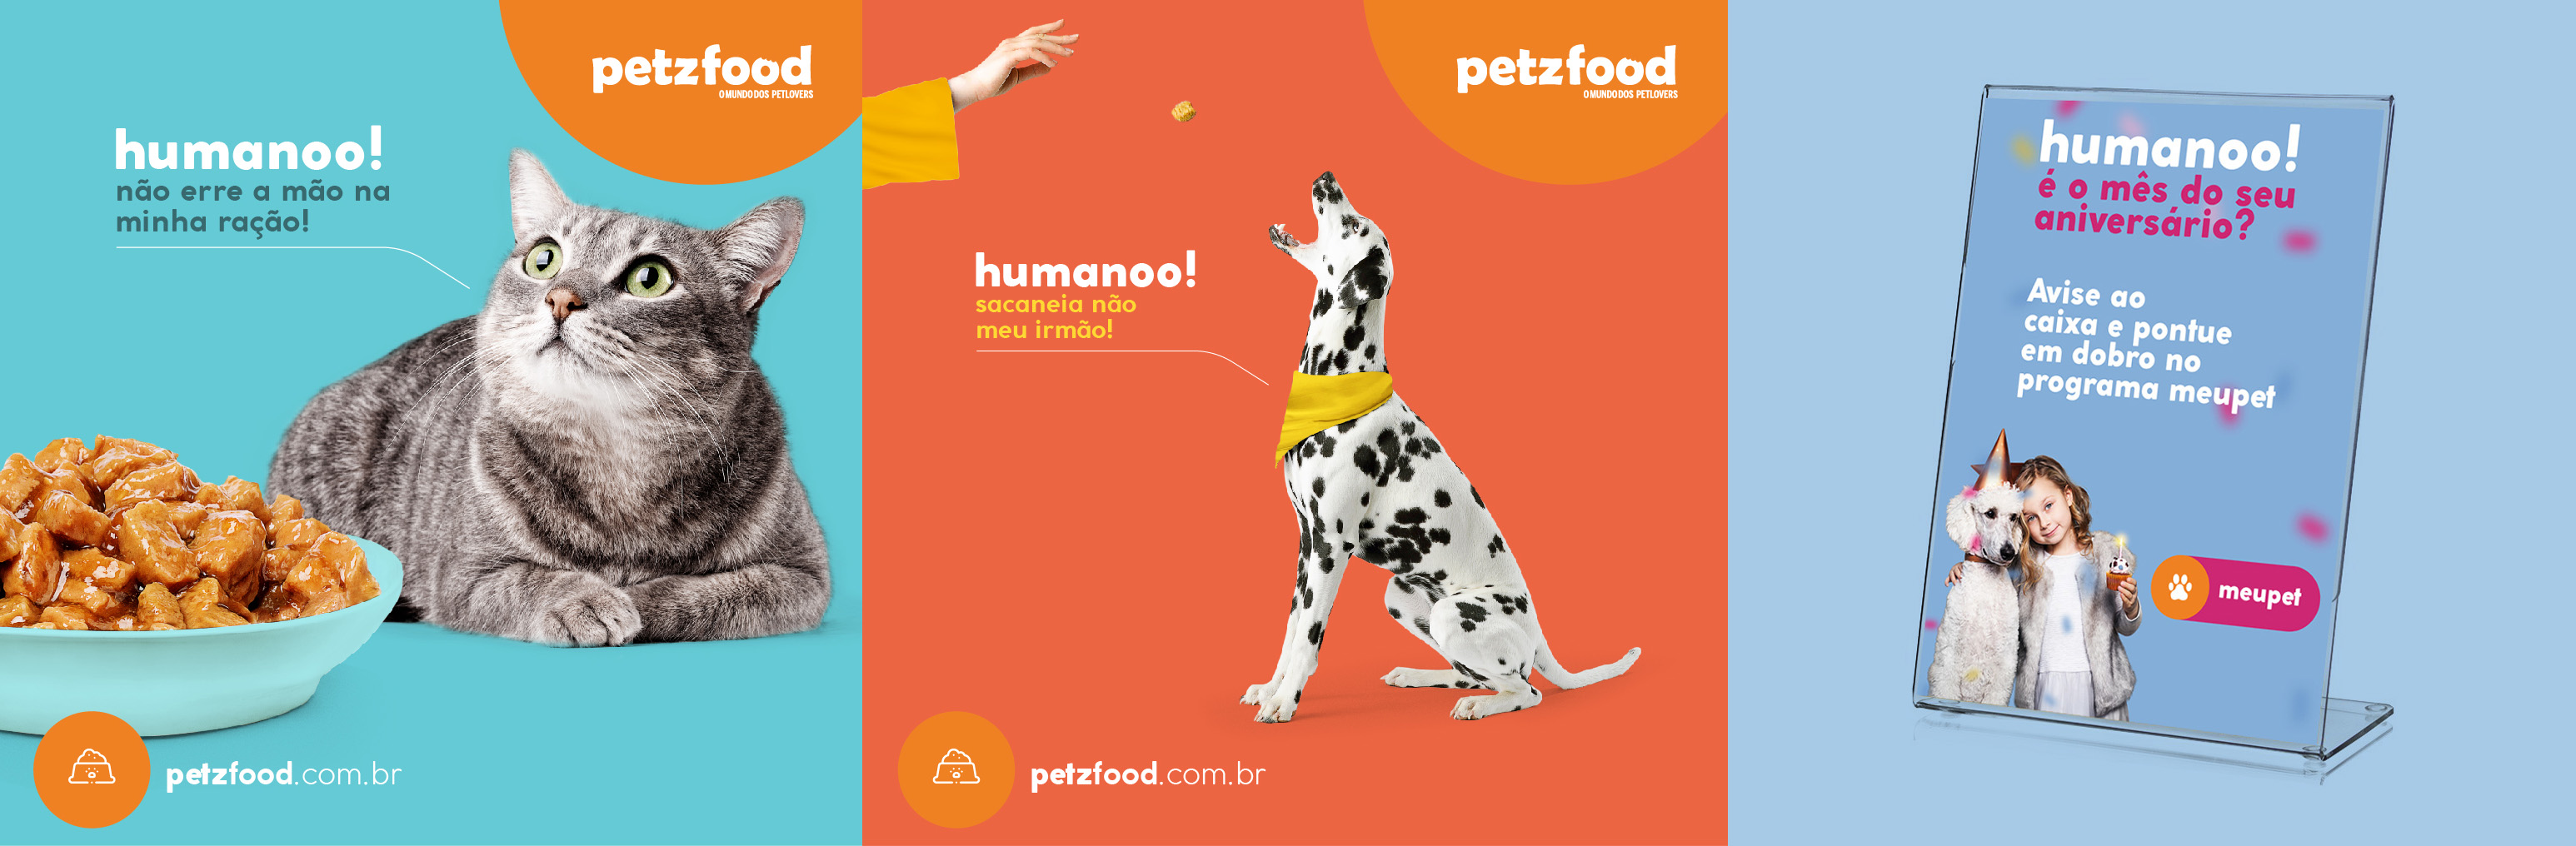 Petzfood - Pethouse - Alimentos para cães - Rações